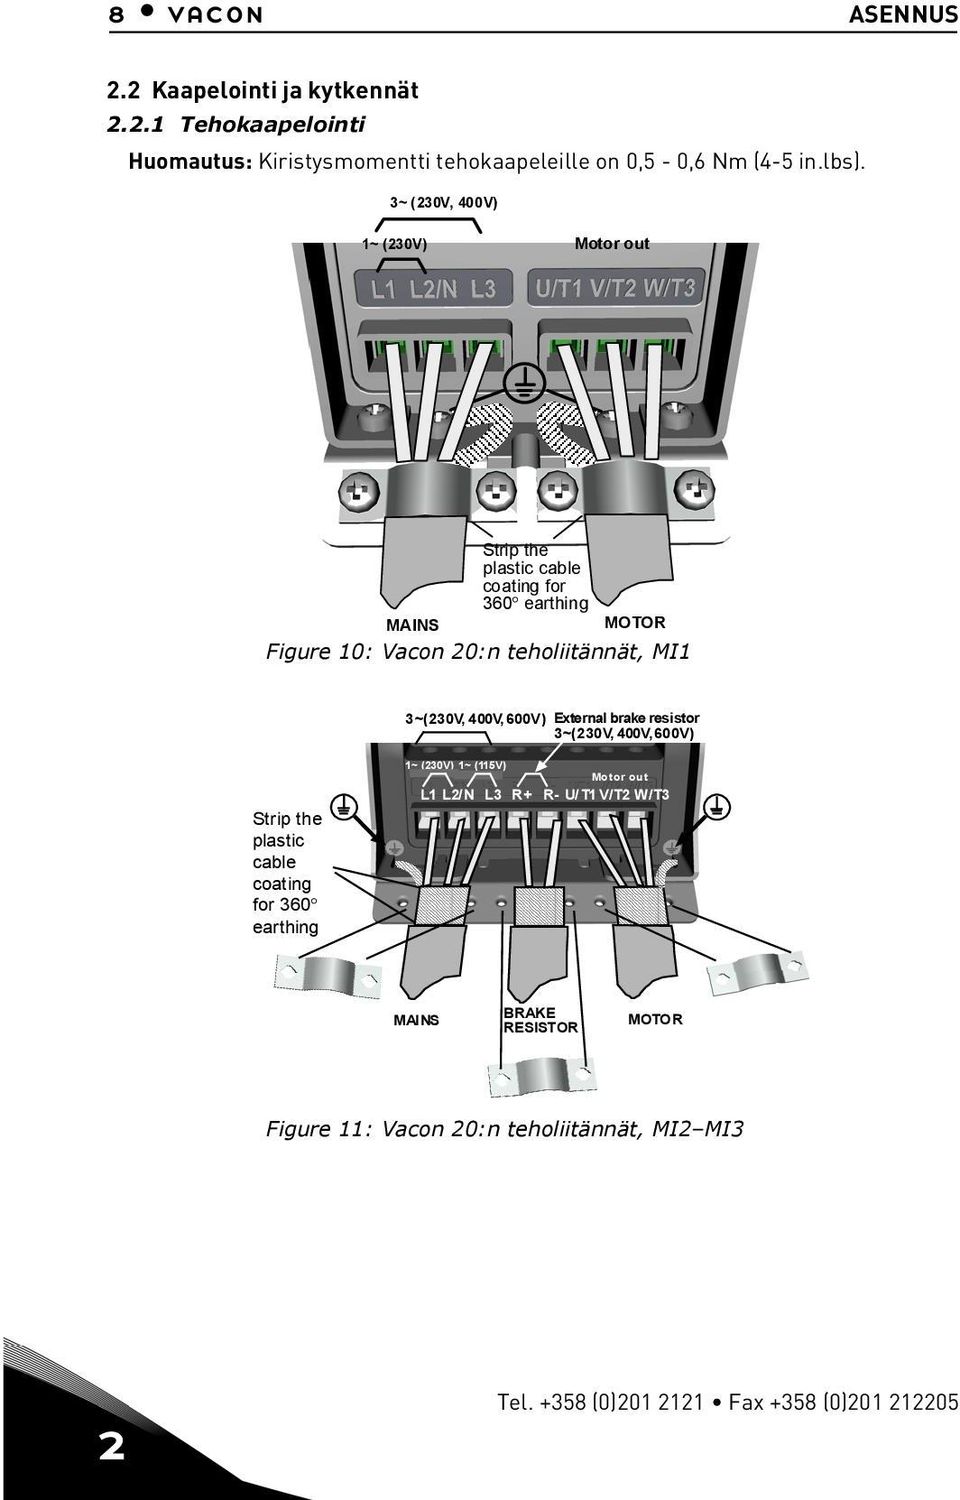 3~(23V, 4V, 6V) External brake resistor 3~(23V, 4V,6V) Strip the plastic cable coating for 36 earthing 1~ (23V) 1~ (11V) Motor out L1